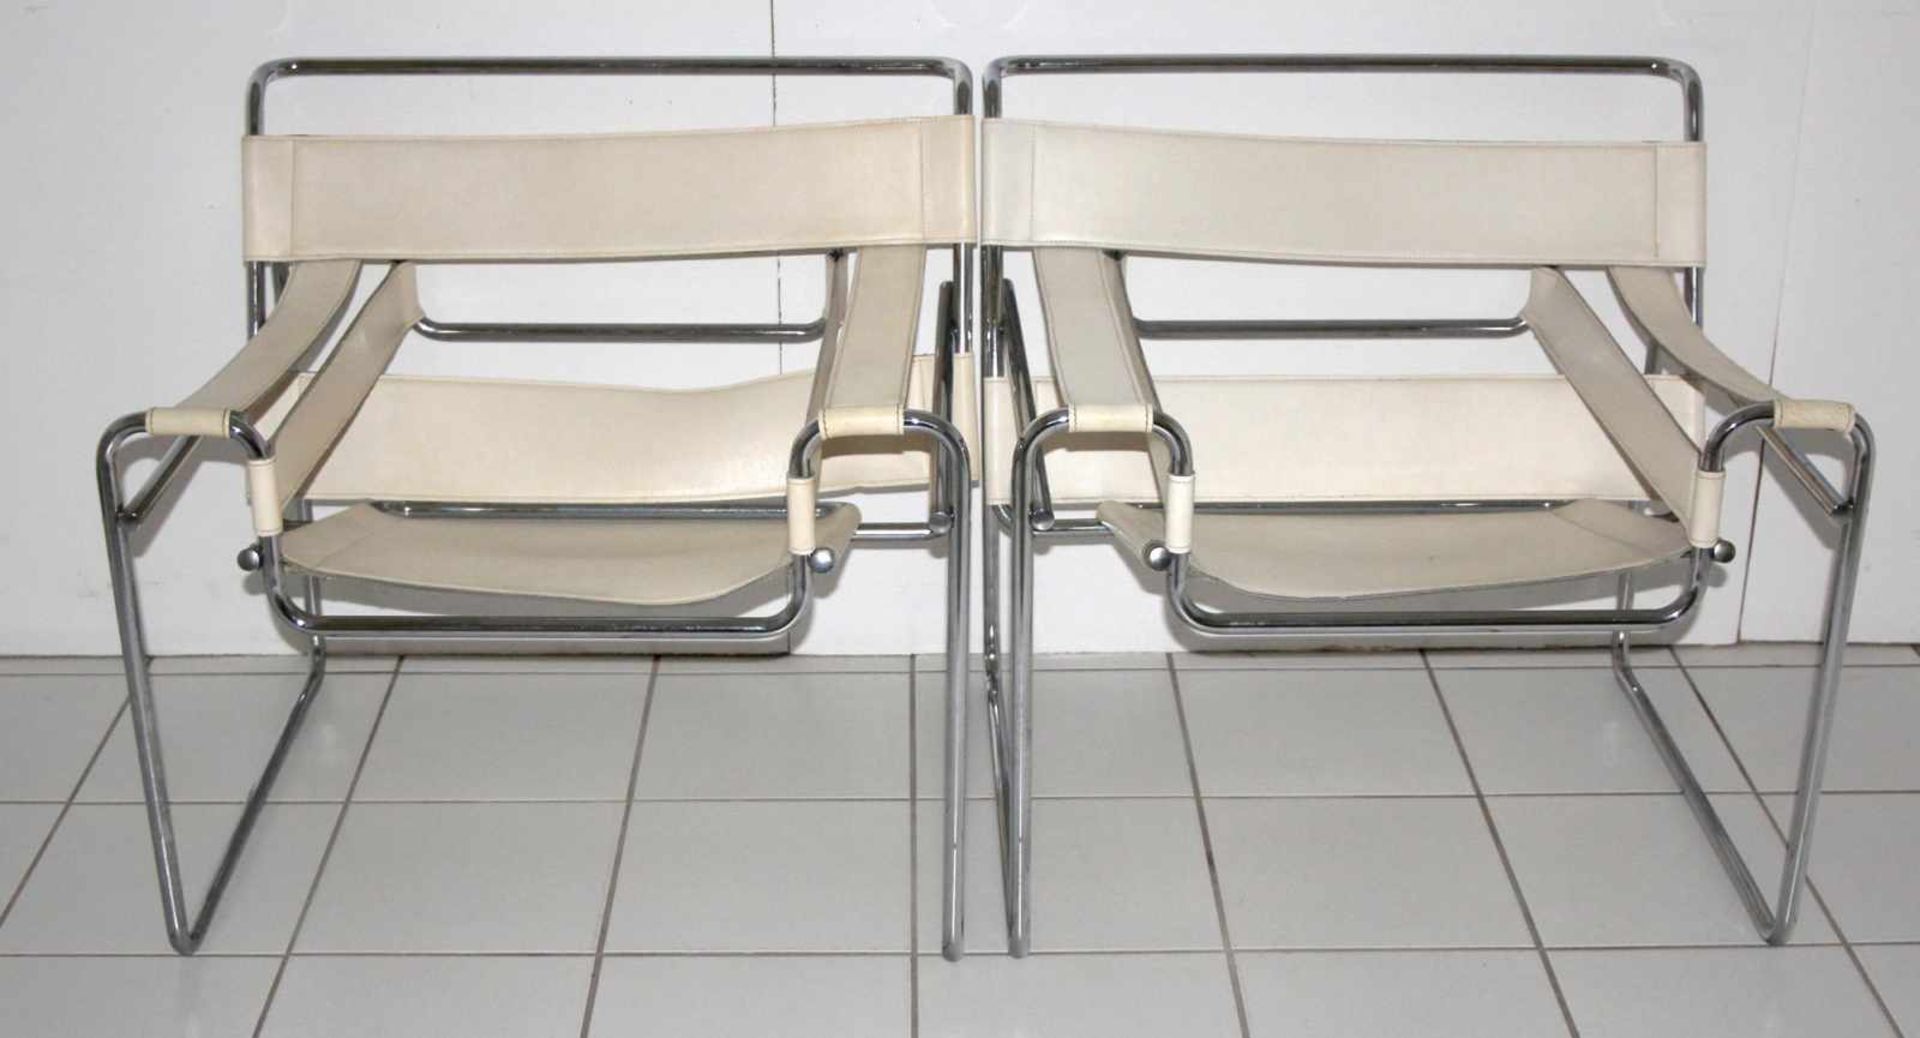 4 Stühle, Modell Wassily, Design Marcel Breuer, 1925/26, Ausführung wohl 70er/80er JahreBauhaus- - Image 2 of 2